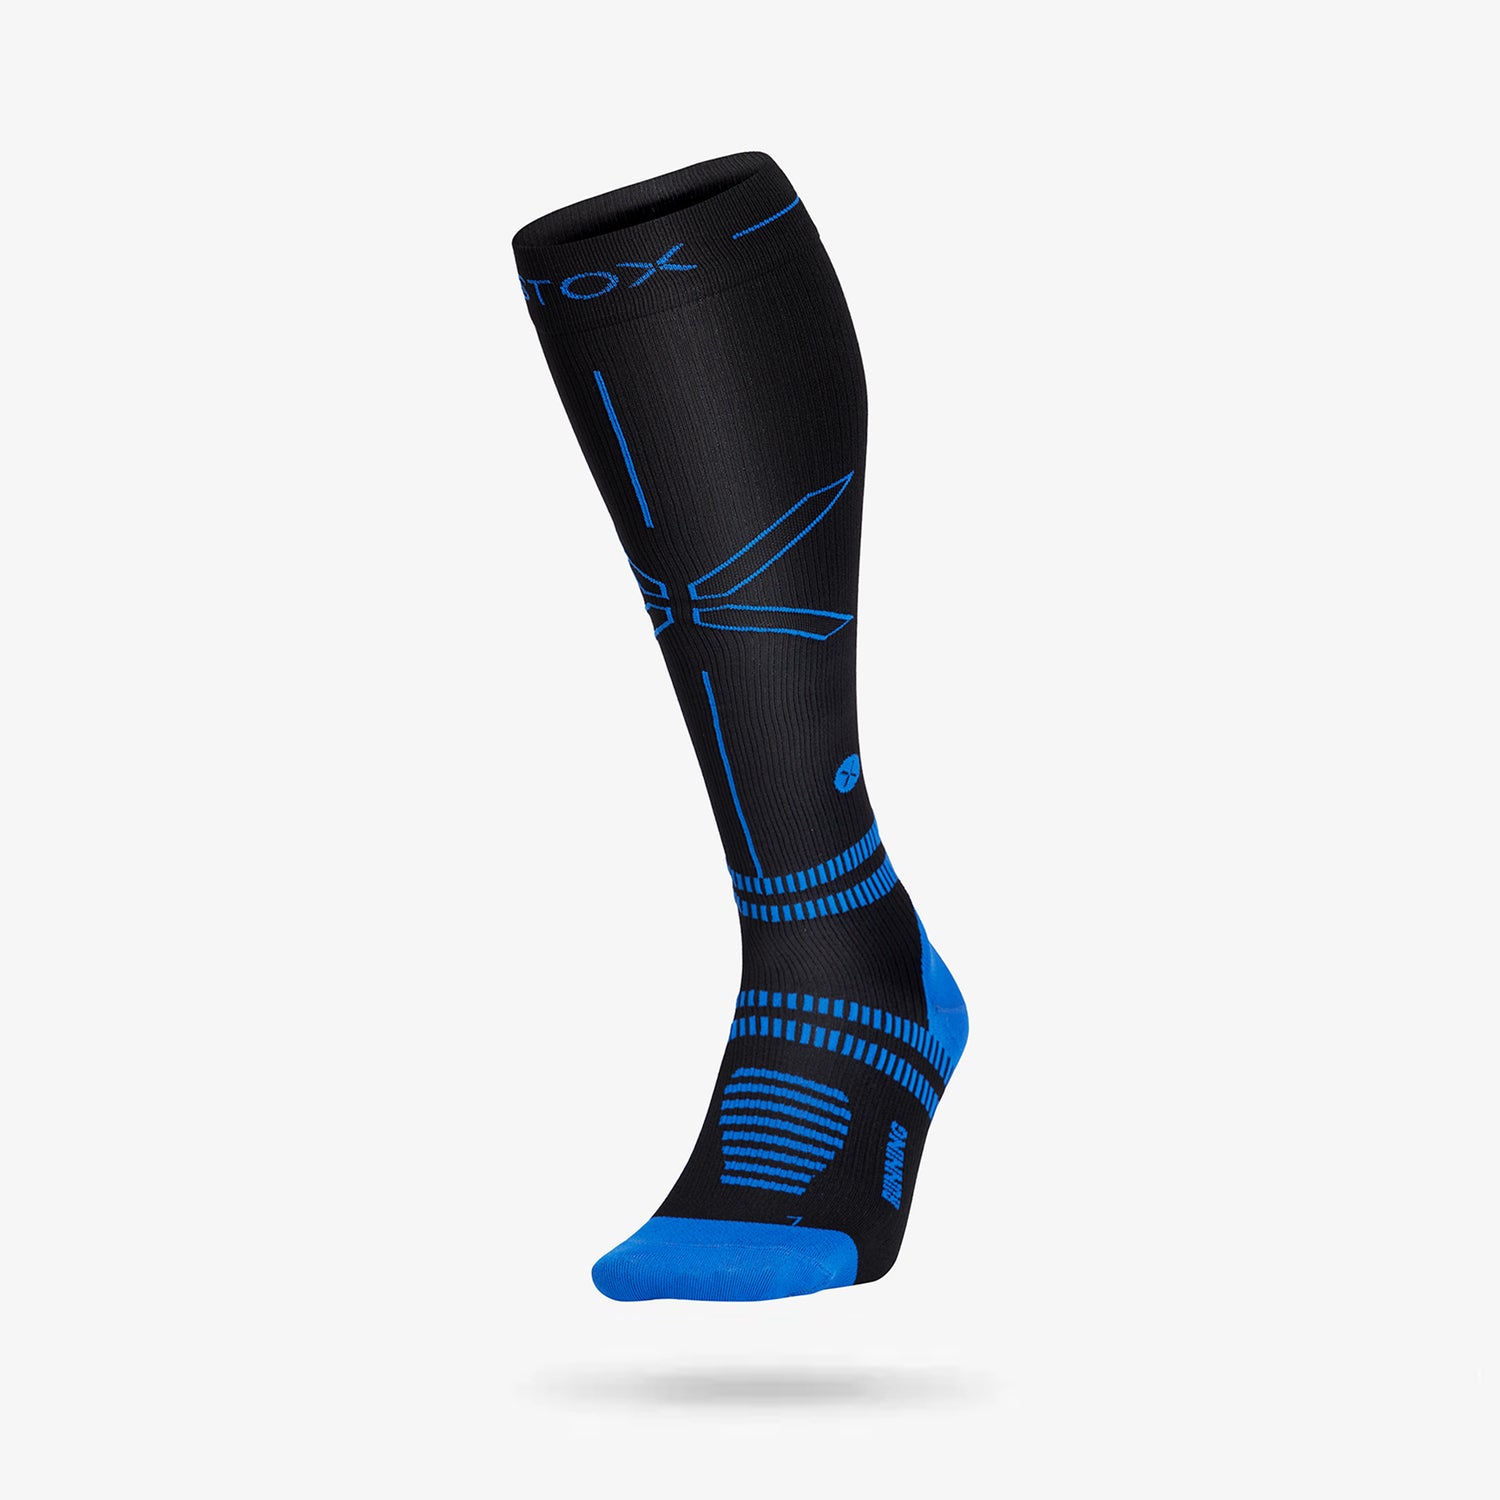 STOX Energy Socks - Running Socks for Men - Premium Compression Socks ...